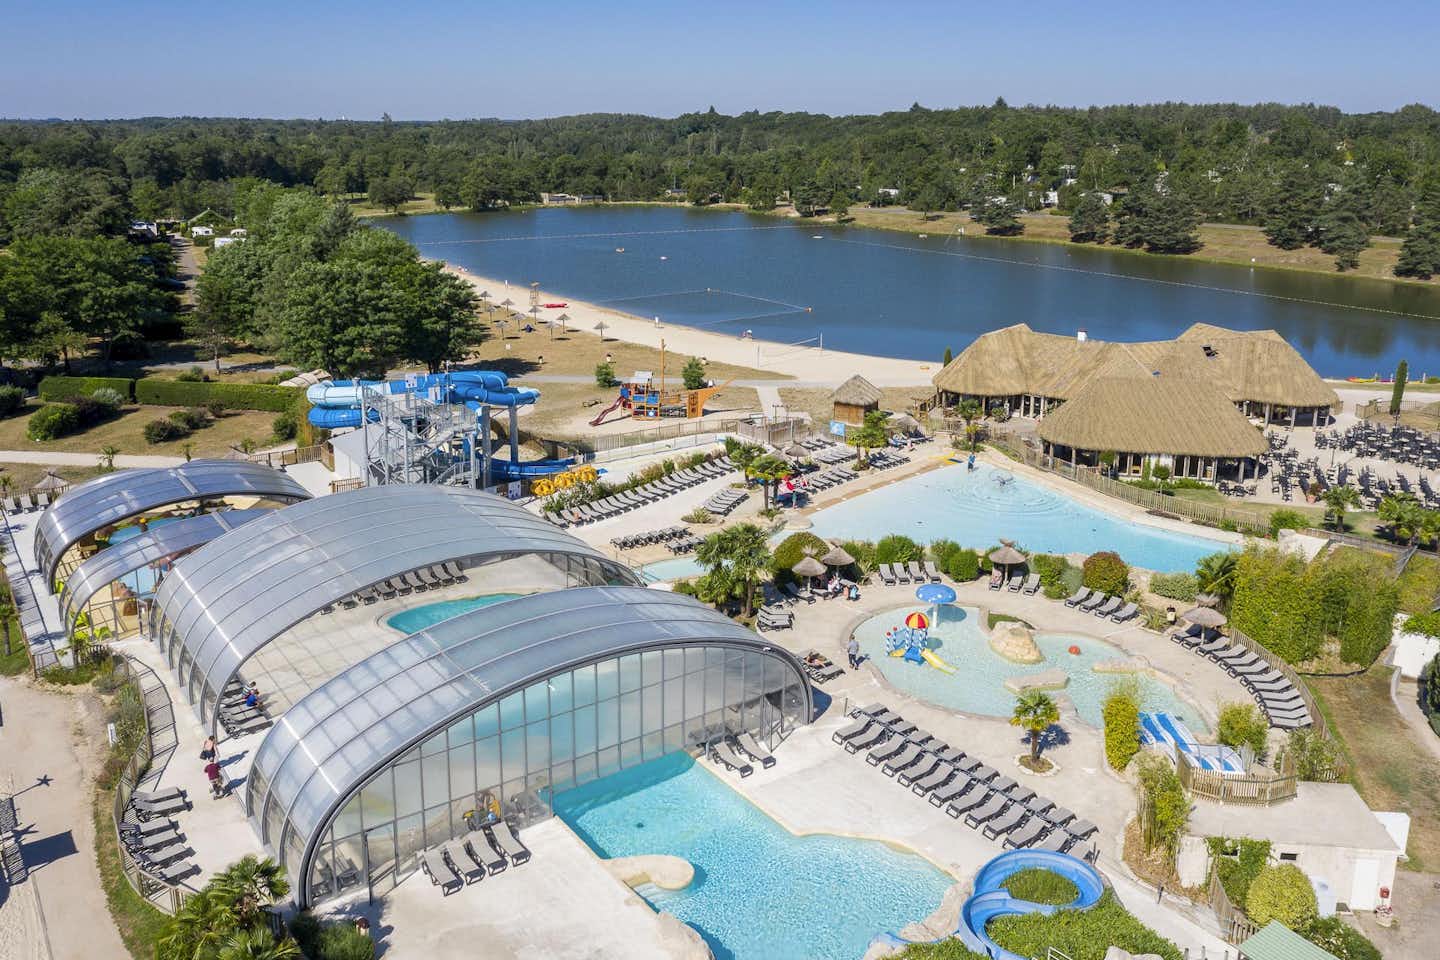 Les Alicourts Resort - Übersicht auf das gesamte Campingplatz Gelände: Pool, Wasserrutsche, Liegestühlen und Sonnenschirmen